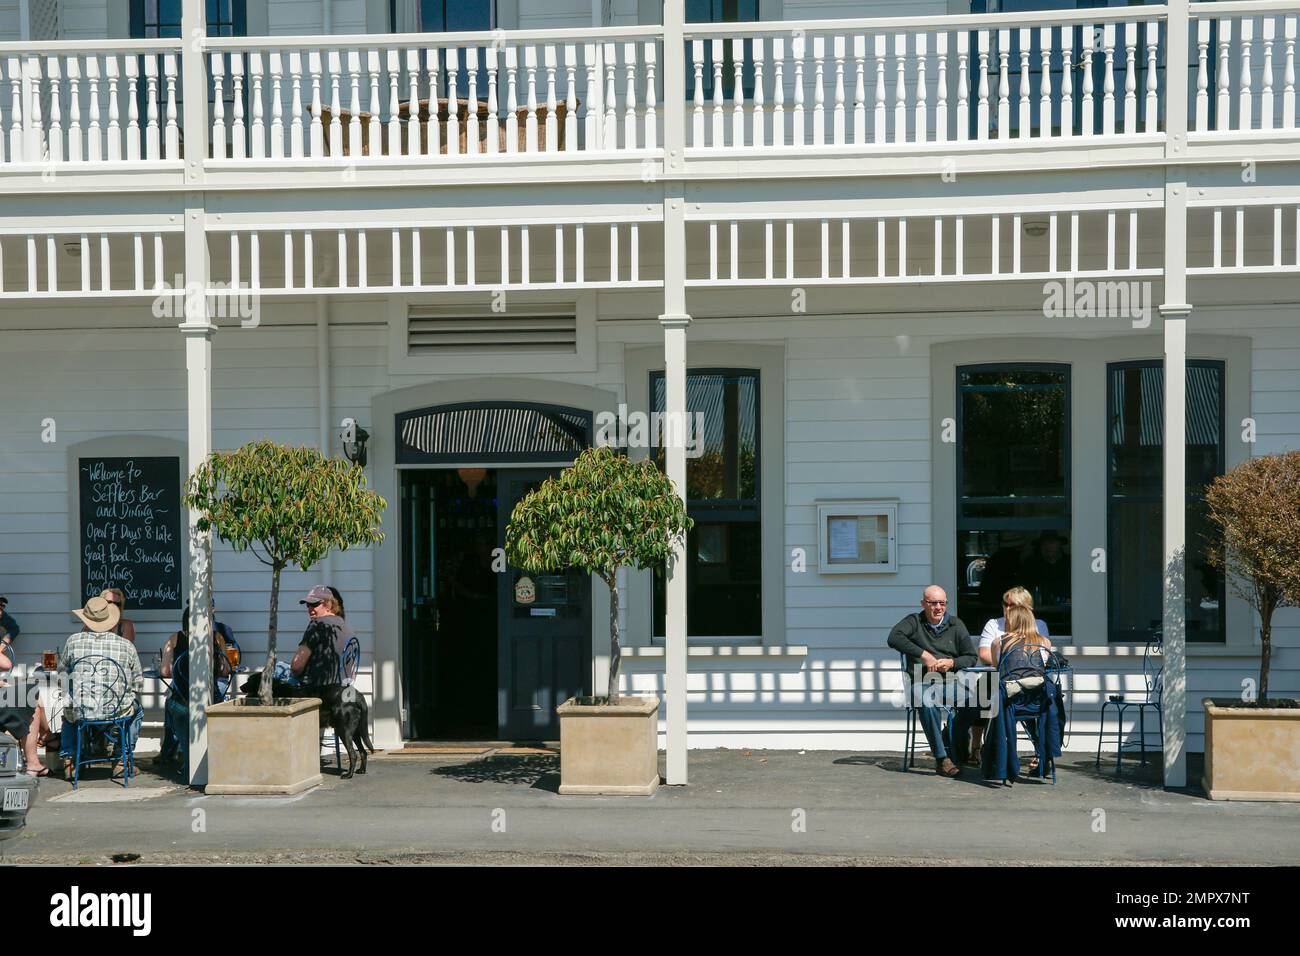 Martinborough New Zealand October 4 2010;  People sitting outside enjoying sun and Martinborough Hotel hospitality Stock Photo